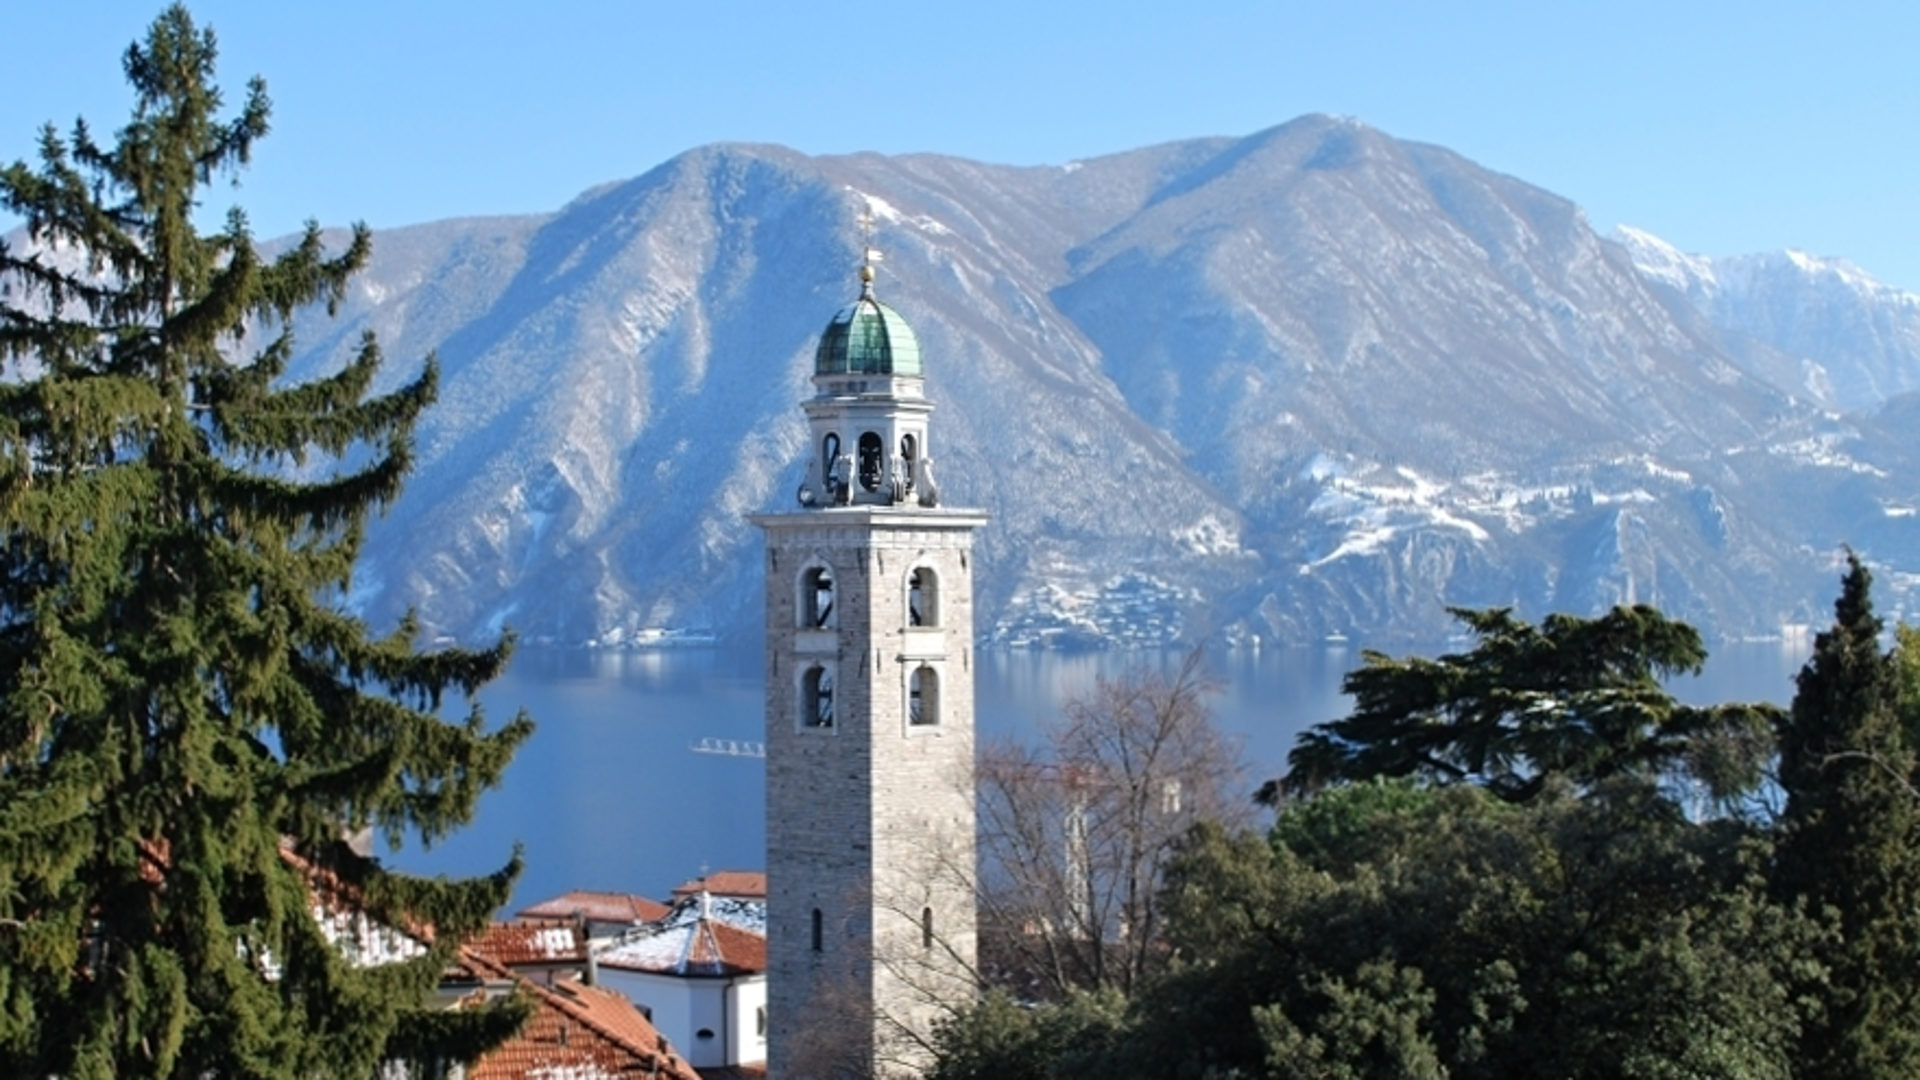 Turm der Kathedrale von Lugano